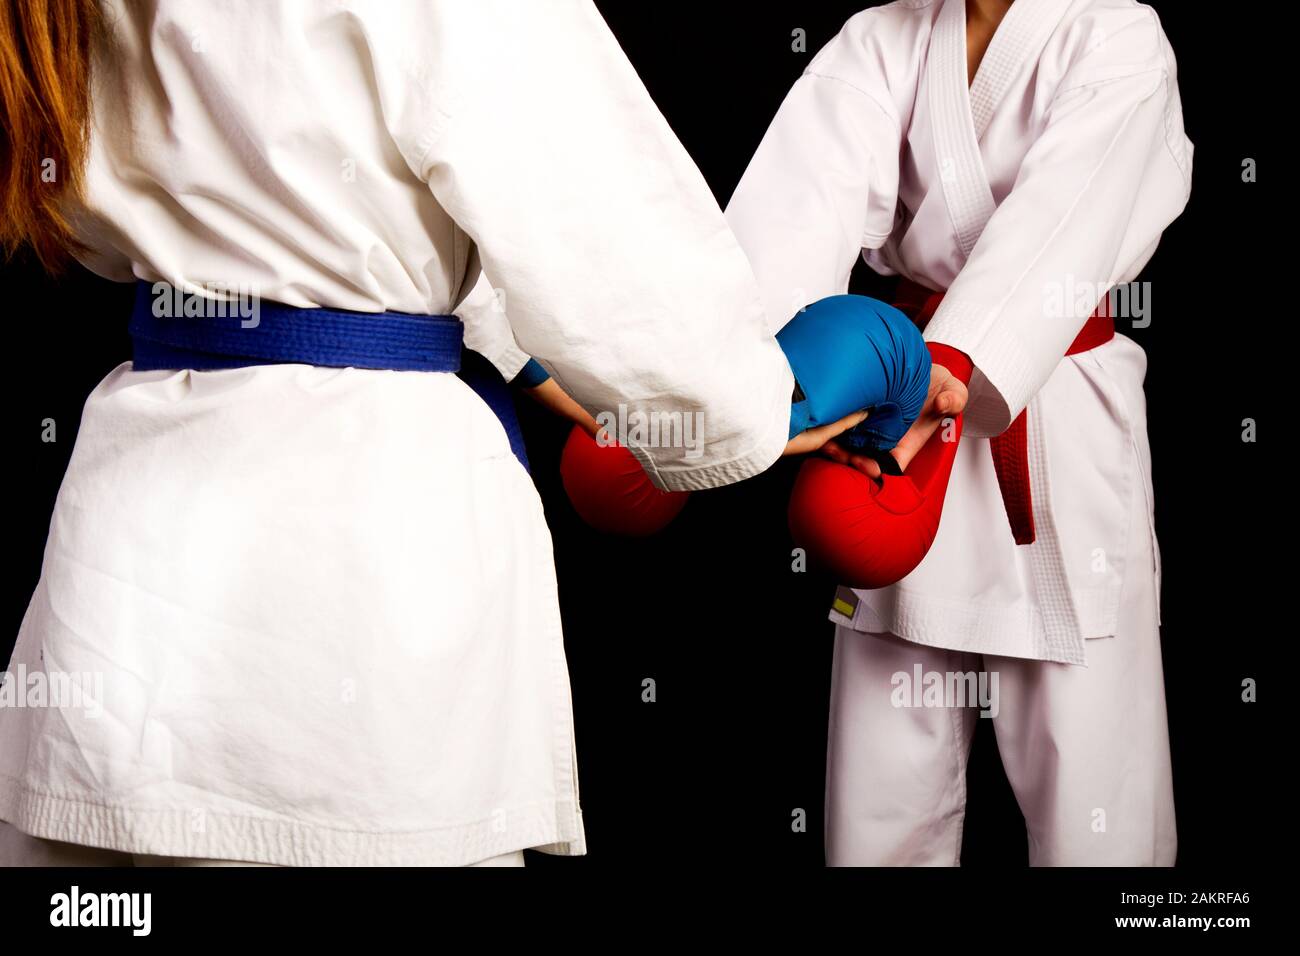 Zwei kleine Karate Frauen in weißen Kimonos, eine in Rot und die andere blau Wettbewerb Ausrüstung schütteln sich die Hände als Zeichen des Respekts vor dem Kampf Aga Stockfoto